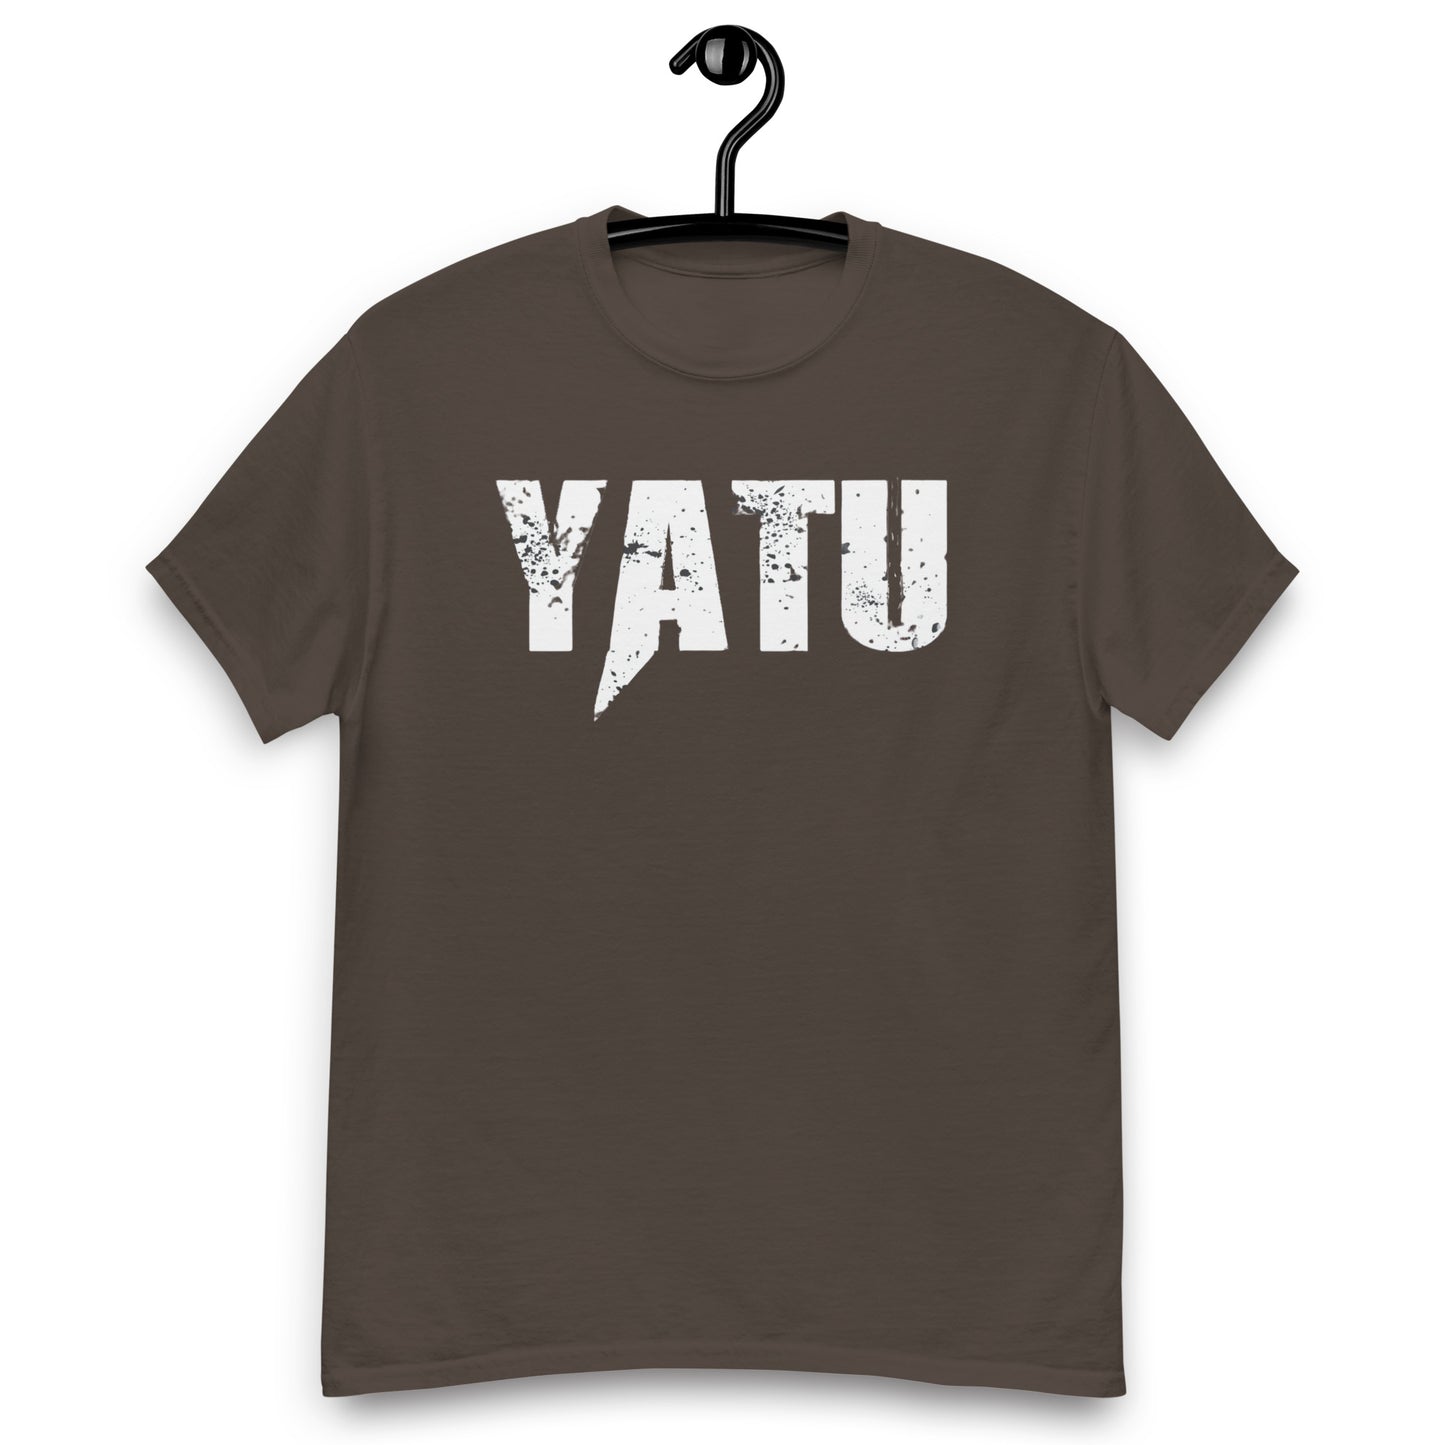 Yatu Men's Classic Dark Choco T-Shirt